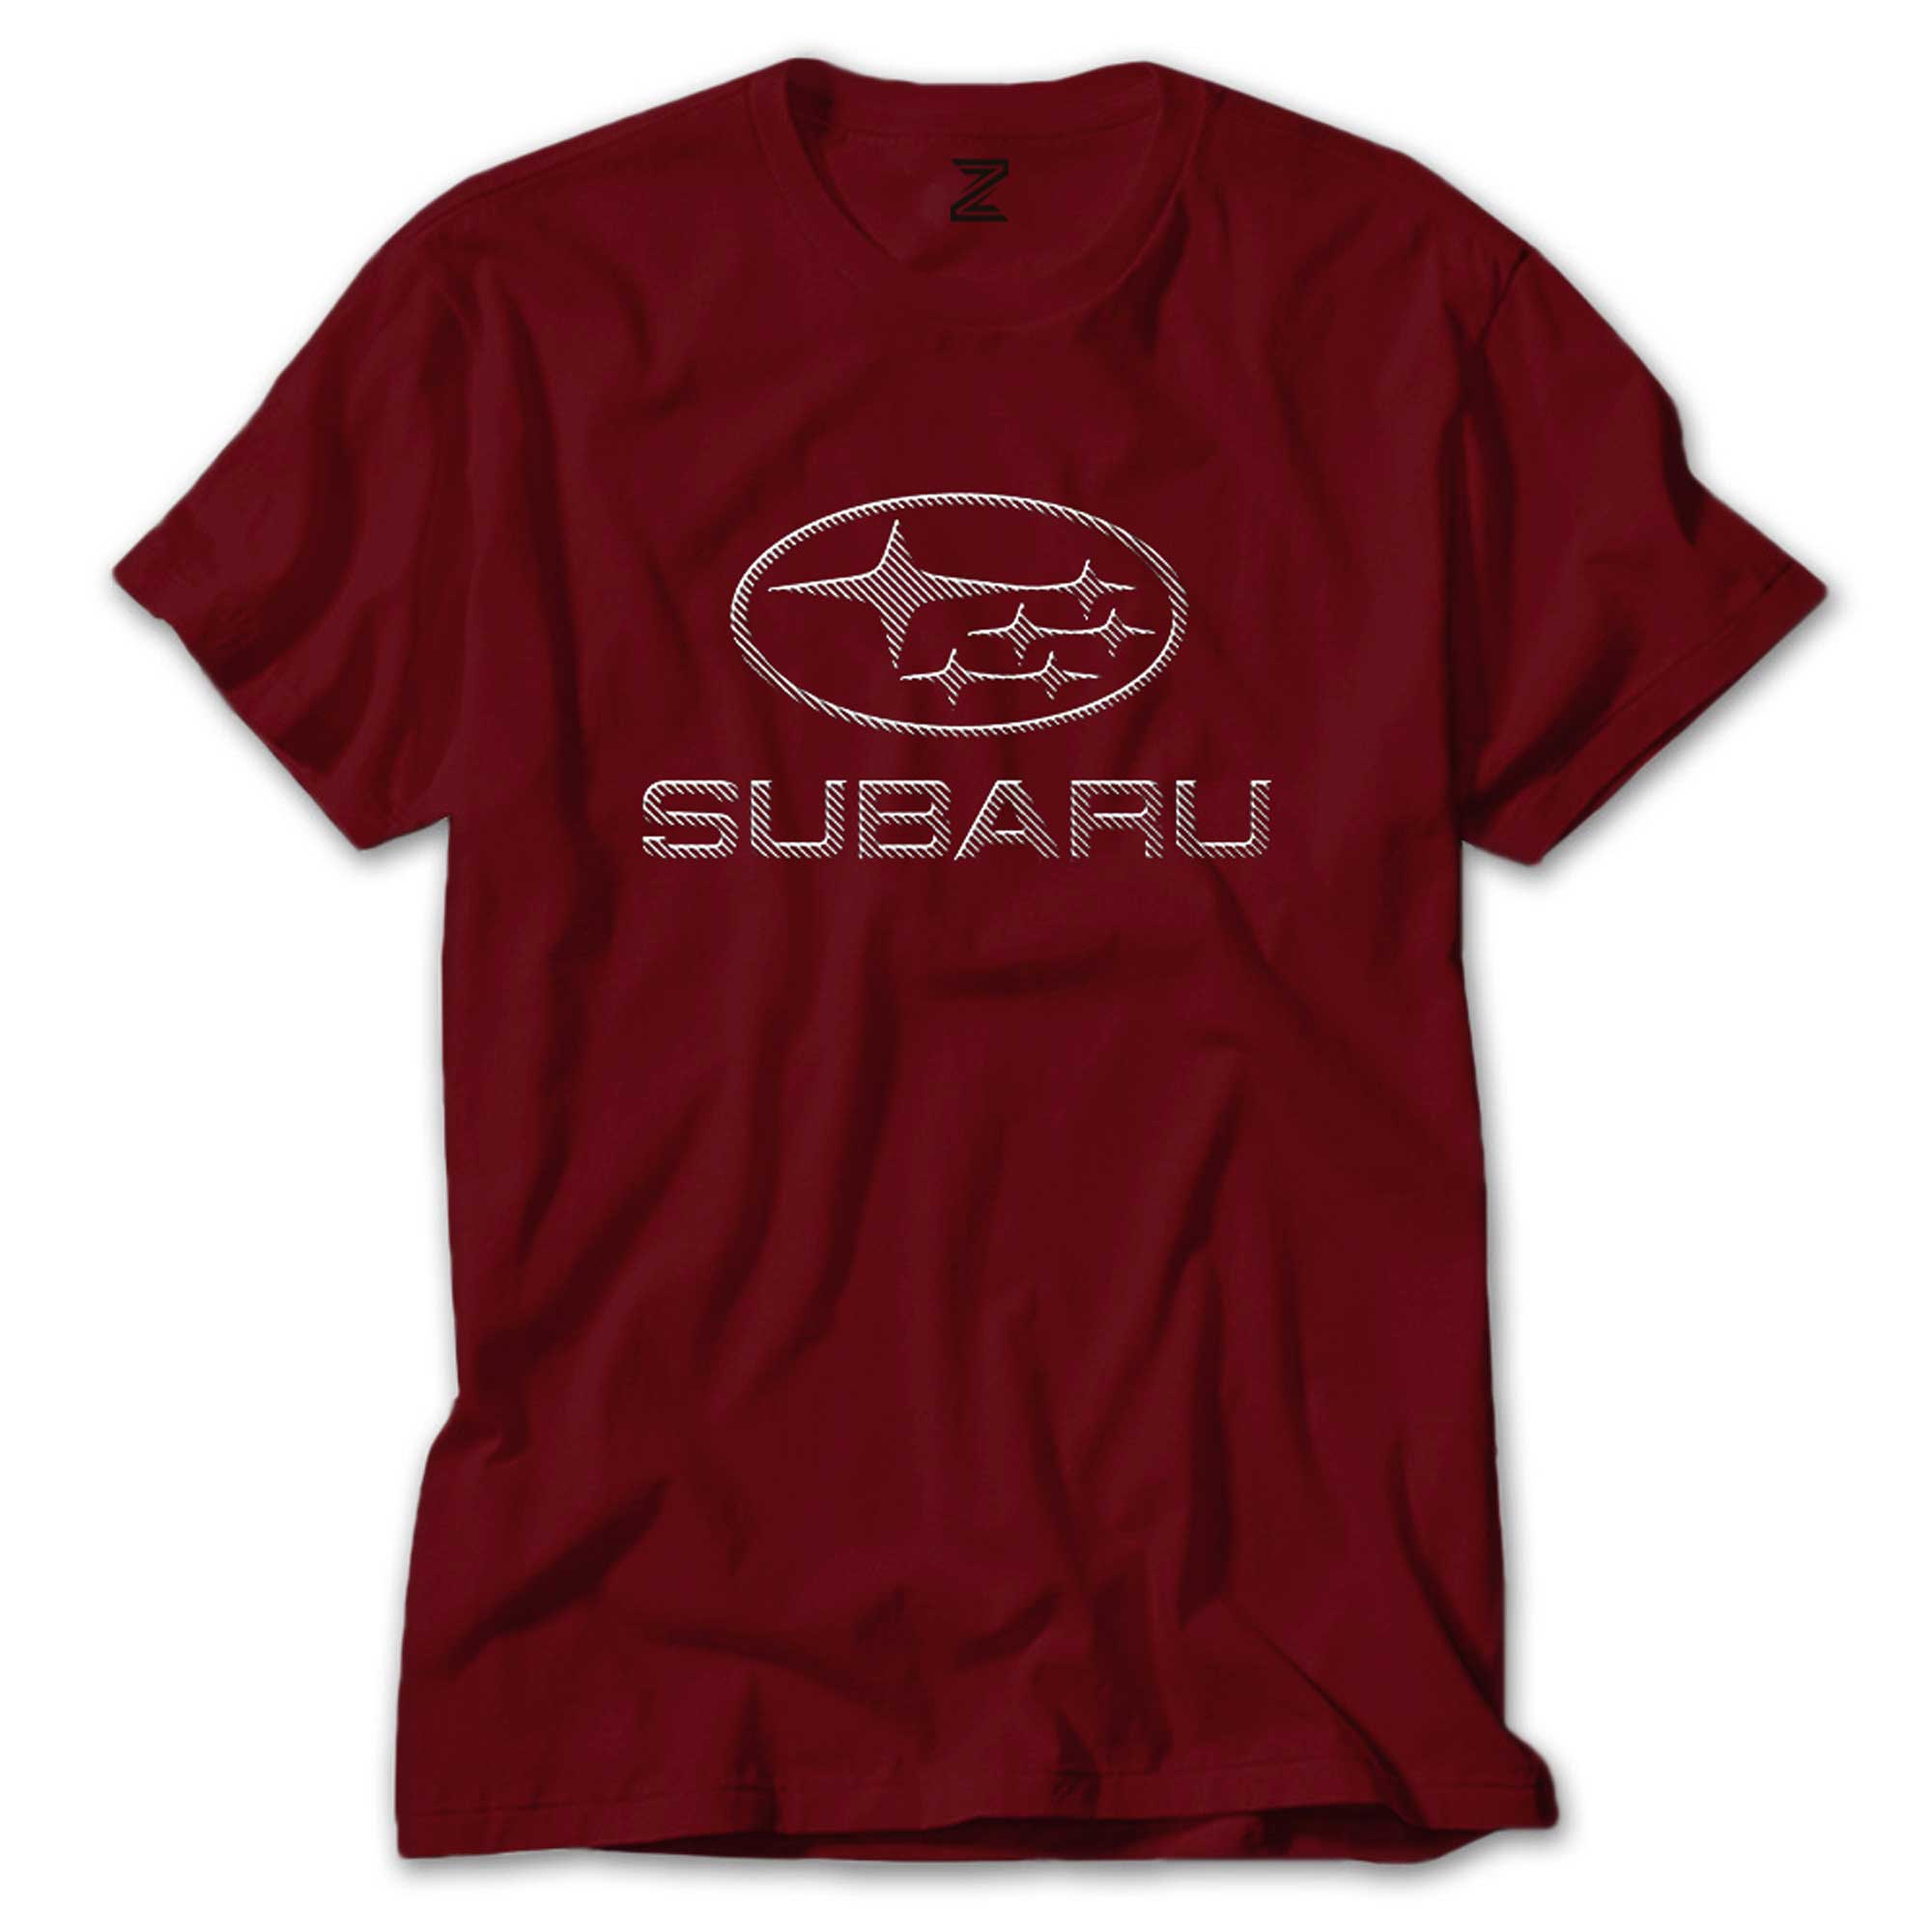 Subaru Carbon Fiber Renkli Tişört